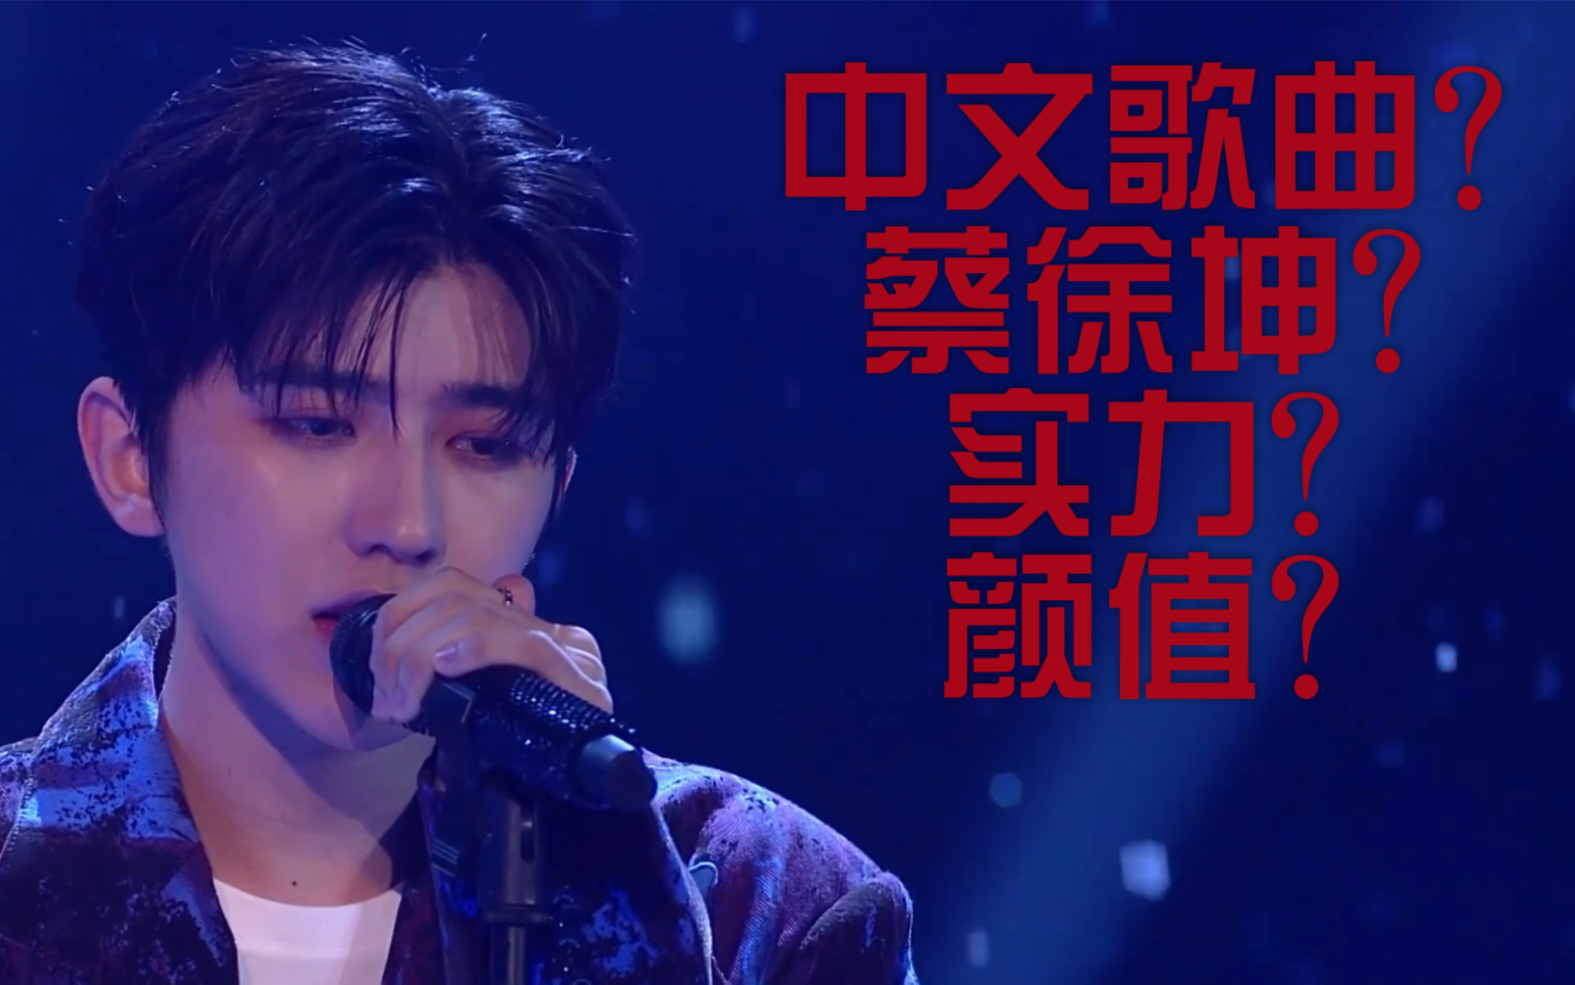 蔡徐坤在快本表演的这首中文抒情歌什么水平?